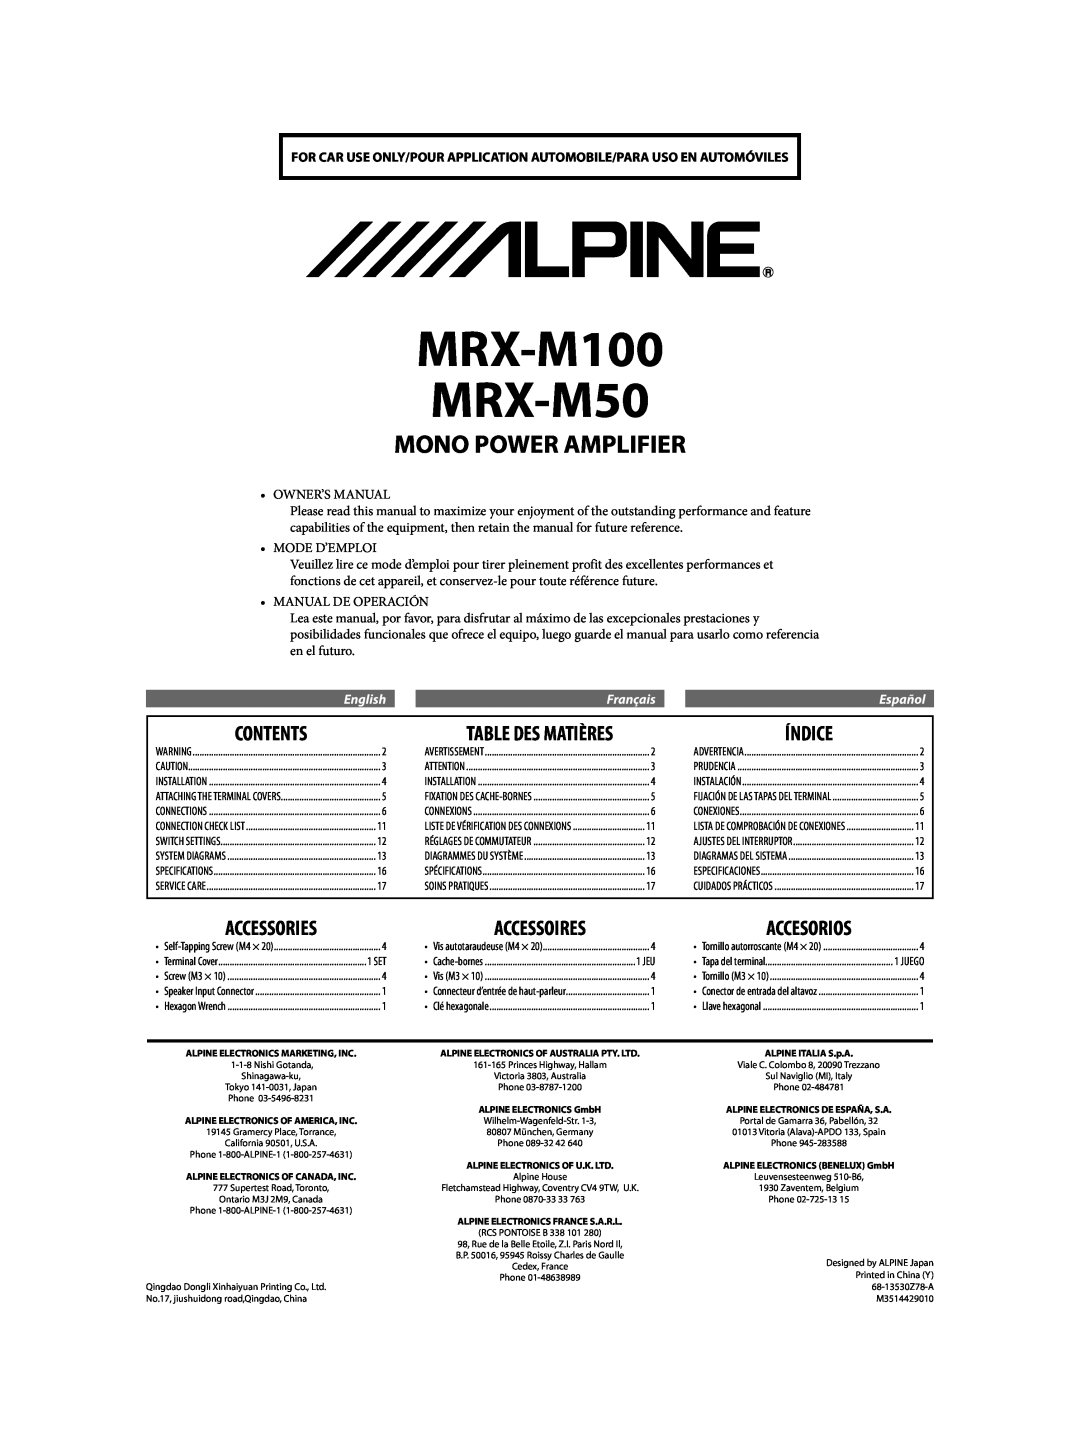 Alpine MRX-M100 owner manual Contents, Índice, Table Des Matières, EnglishFrançaisEspañol, Accessories, Accessoires 